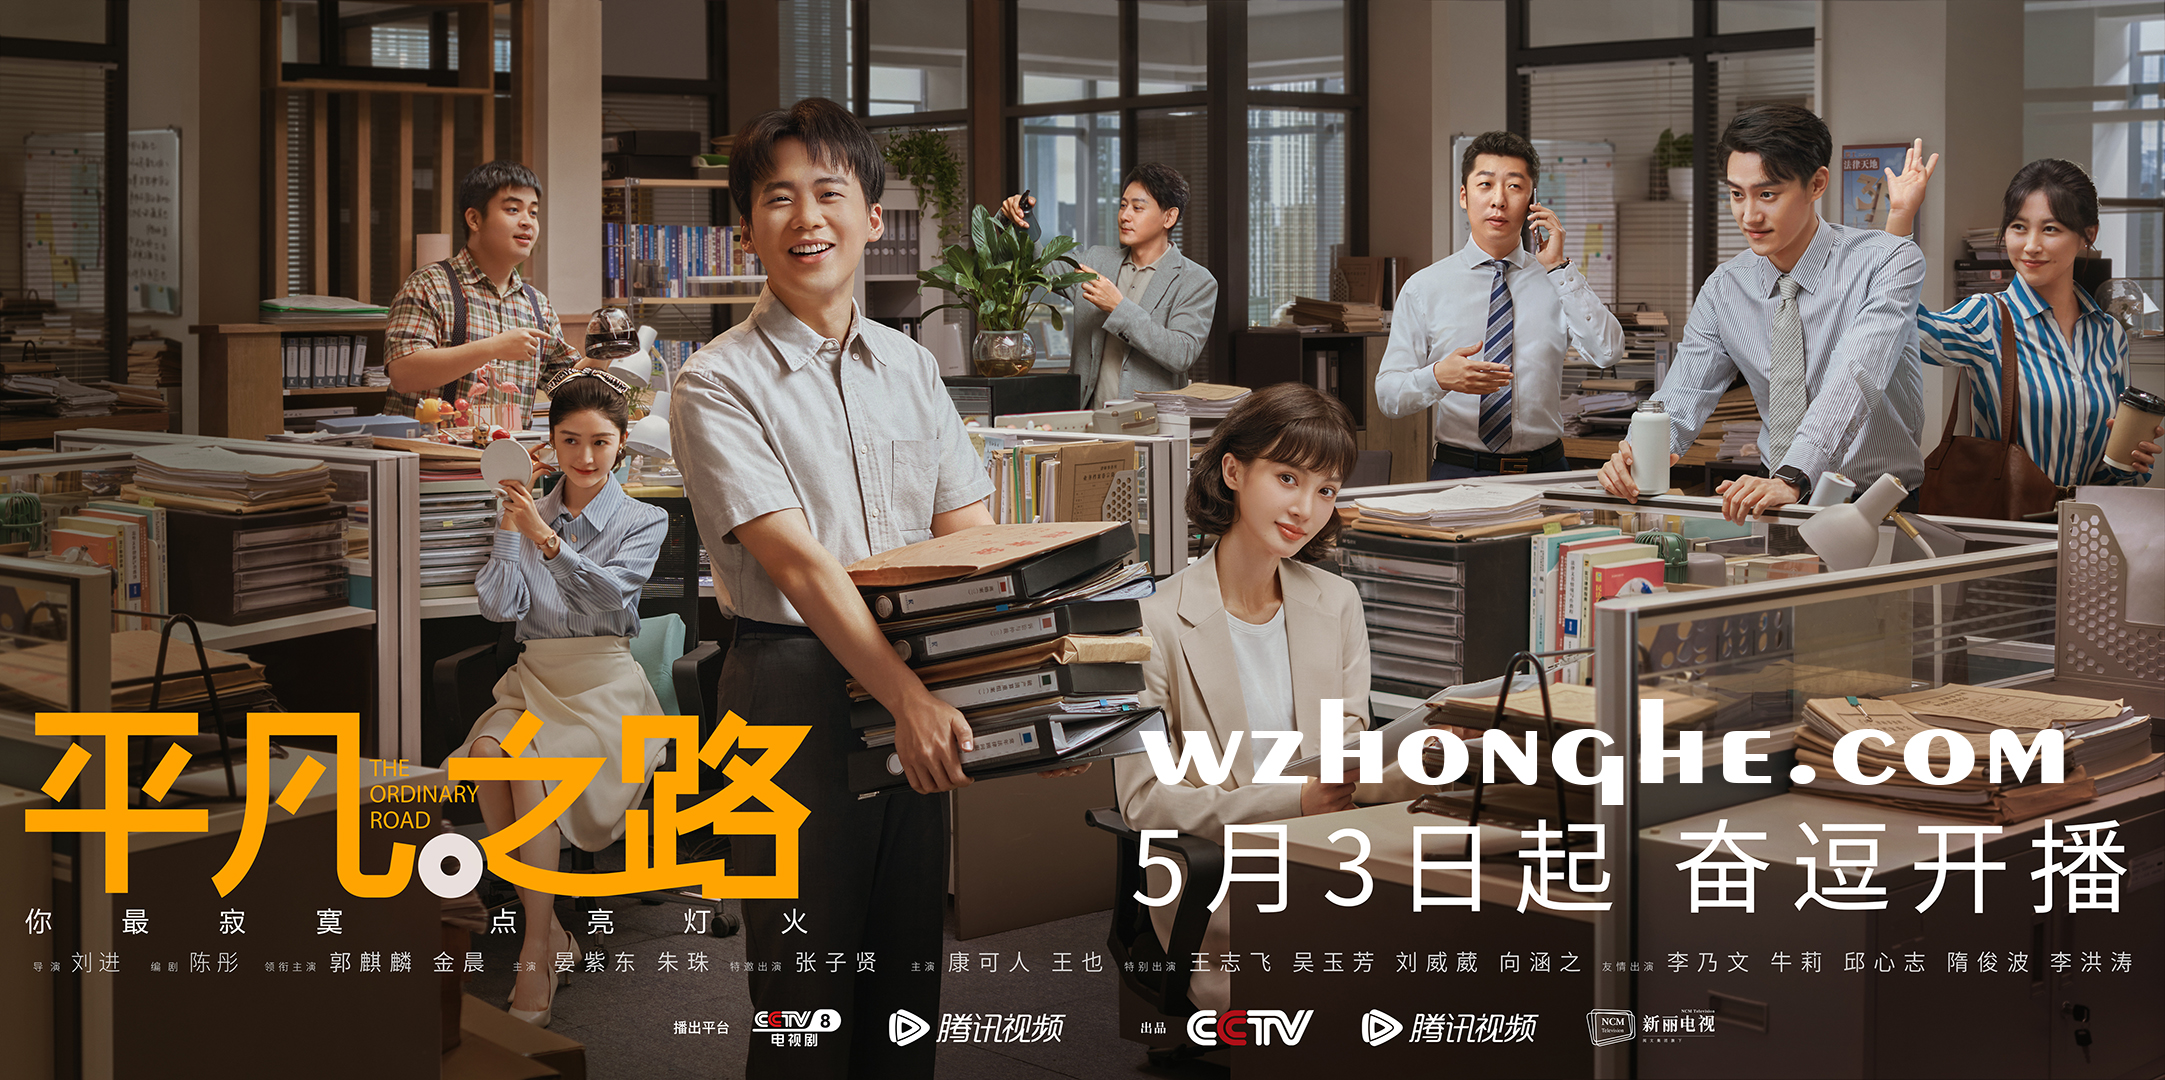 平凡之路 - 无中和wzhonghe.com -2